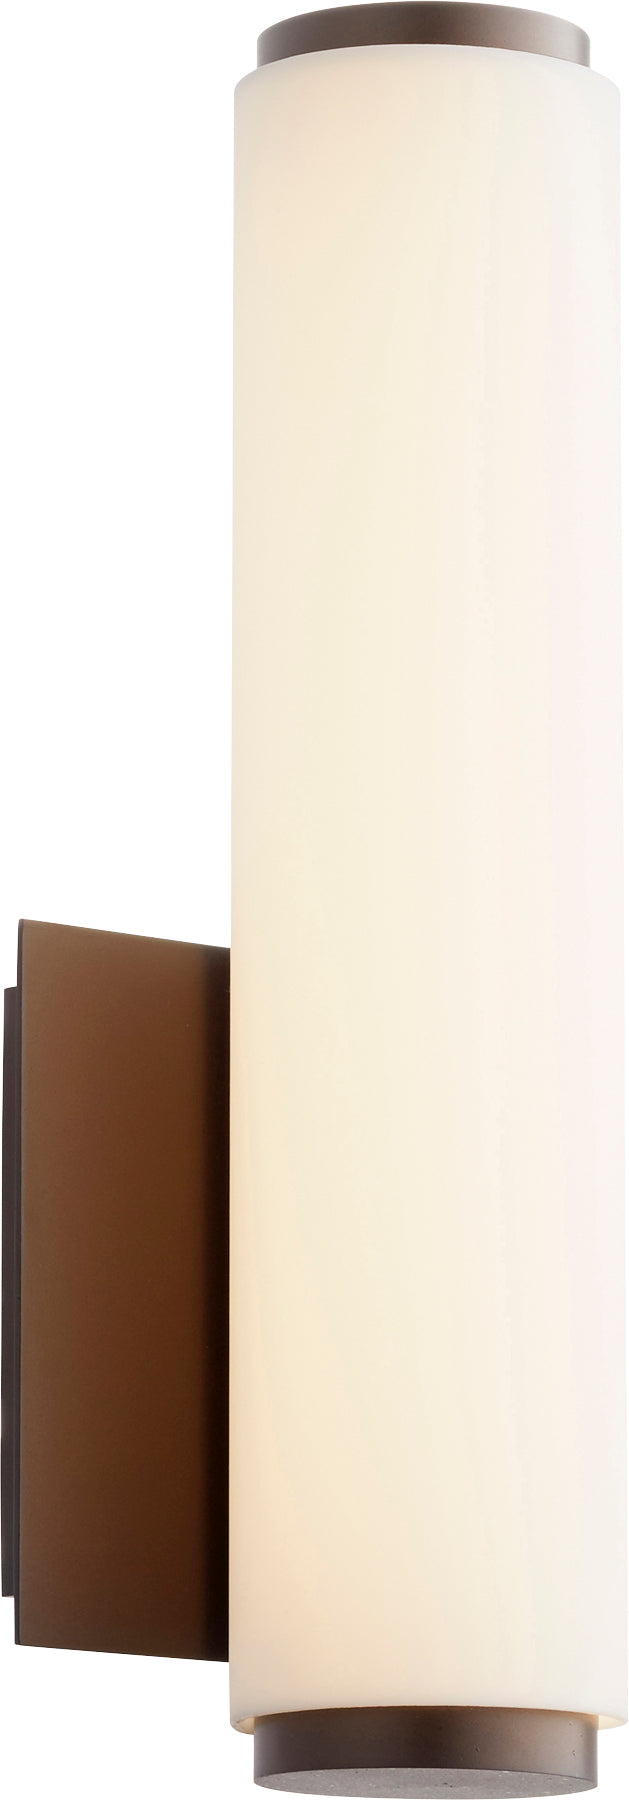 Aplique de pared LED acrílico blanco mate de bronce aceitado moderno y contemporáneo de 1 luz